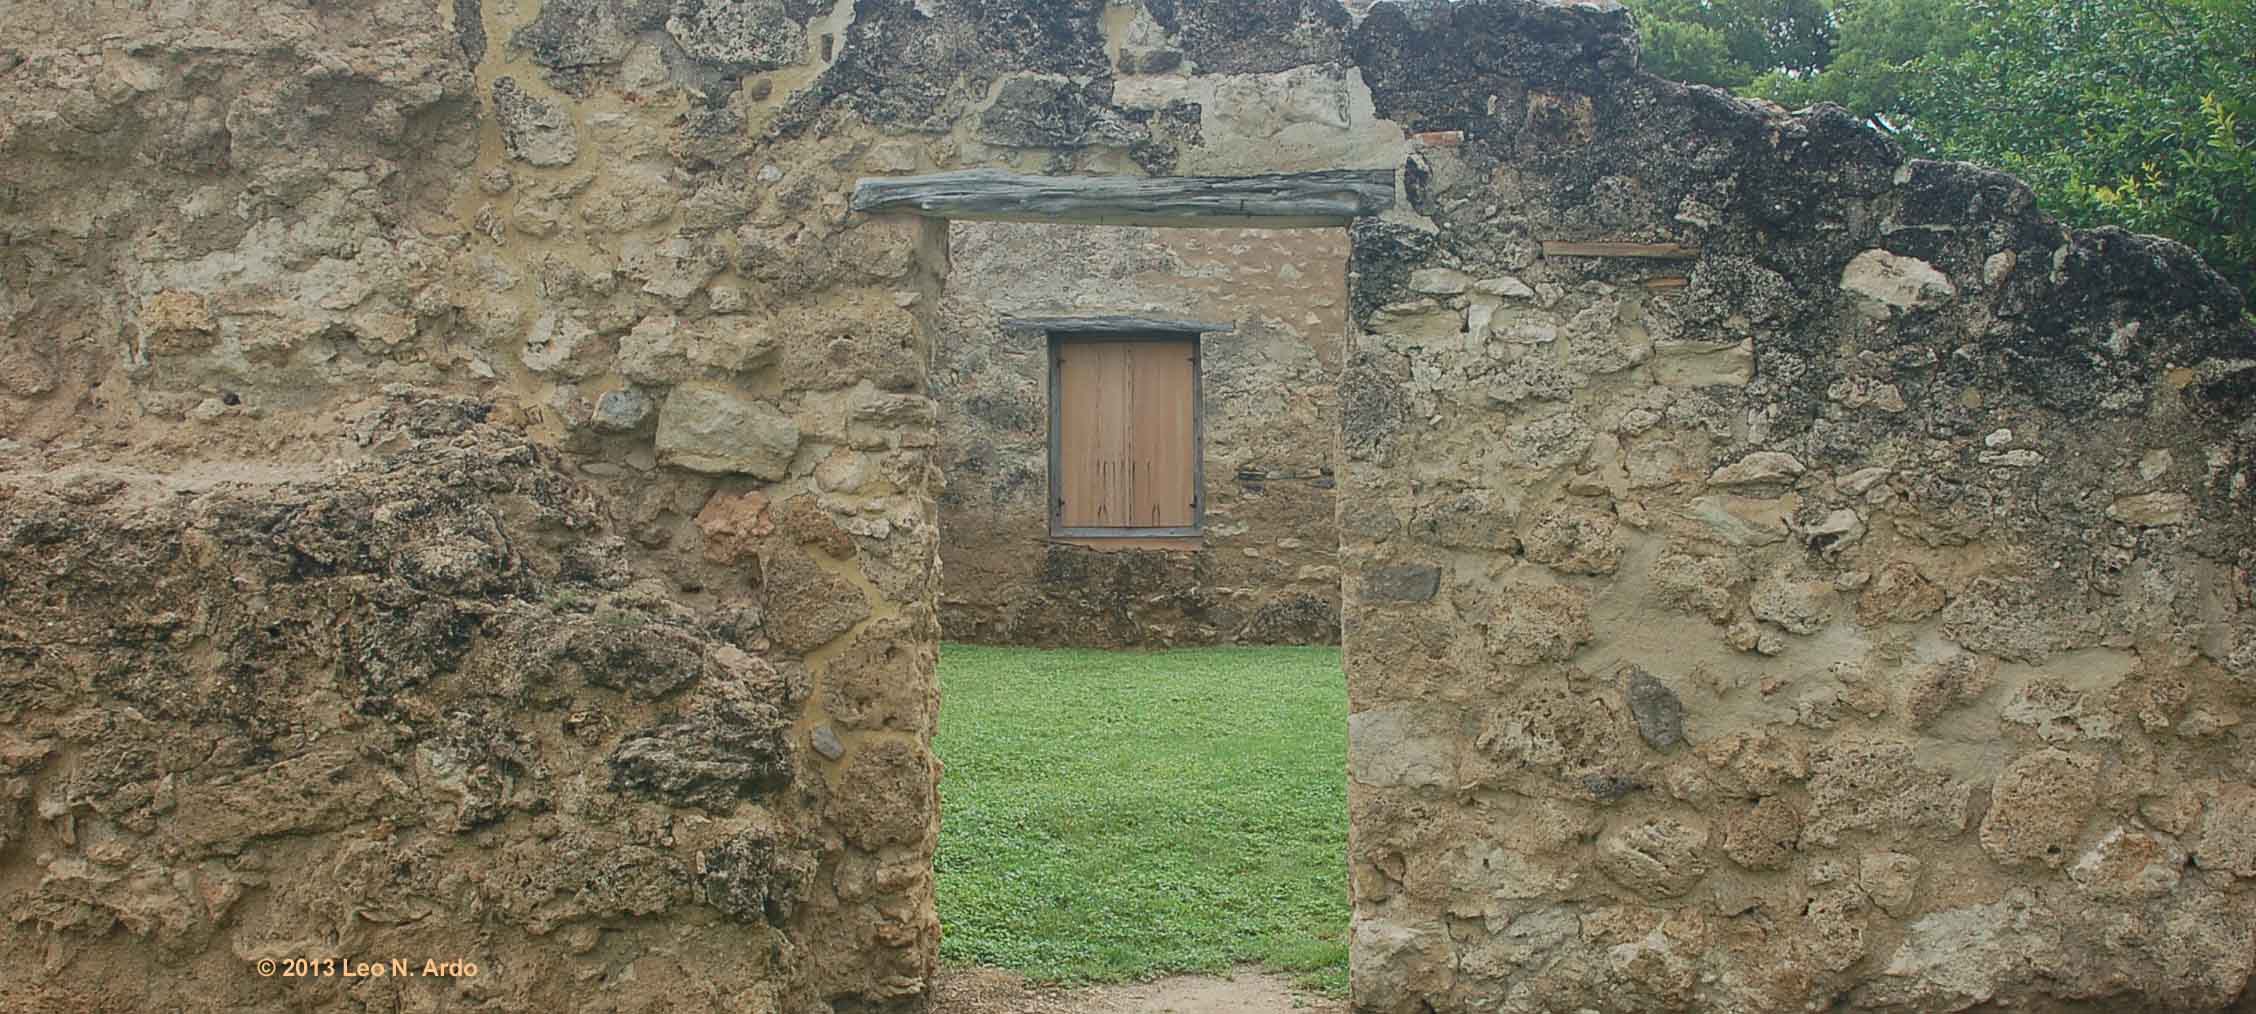 Doorway of Time